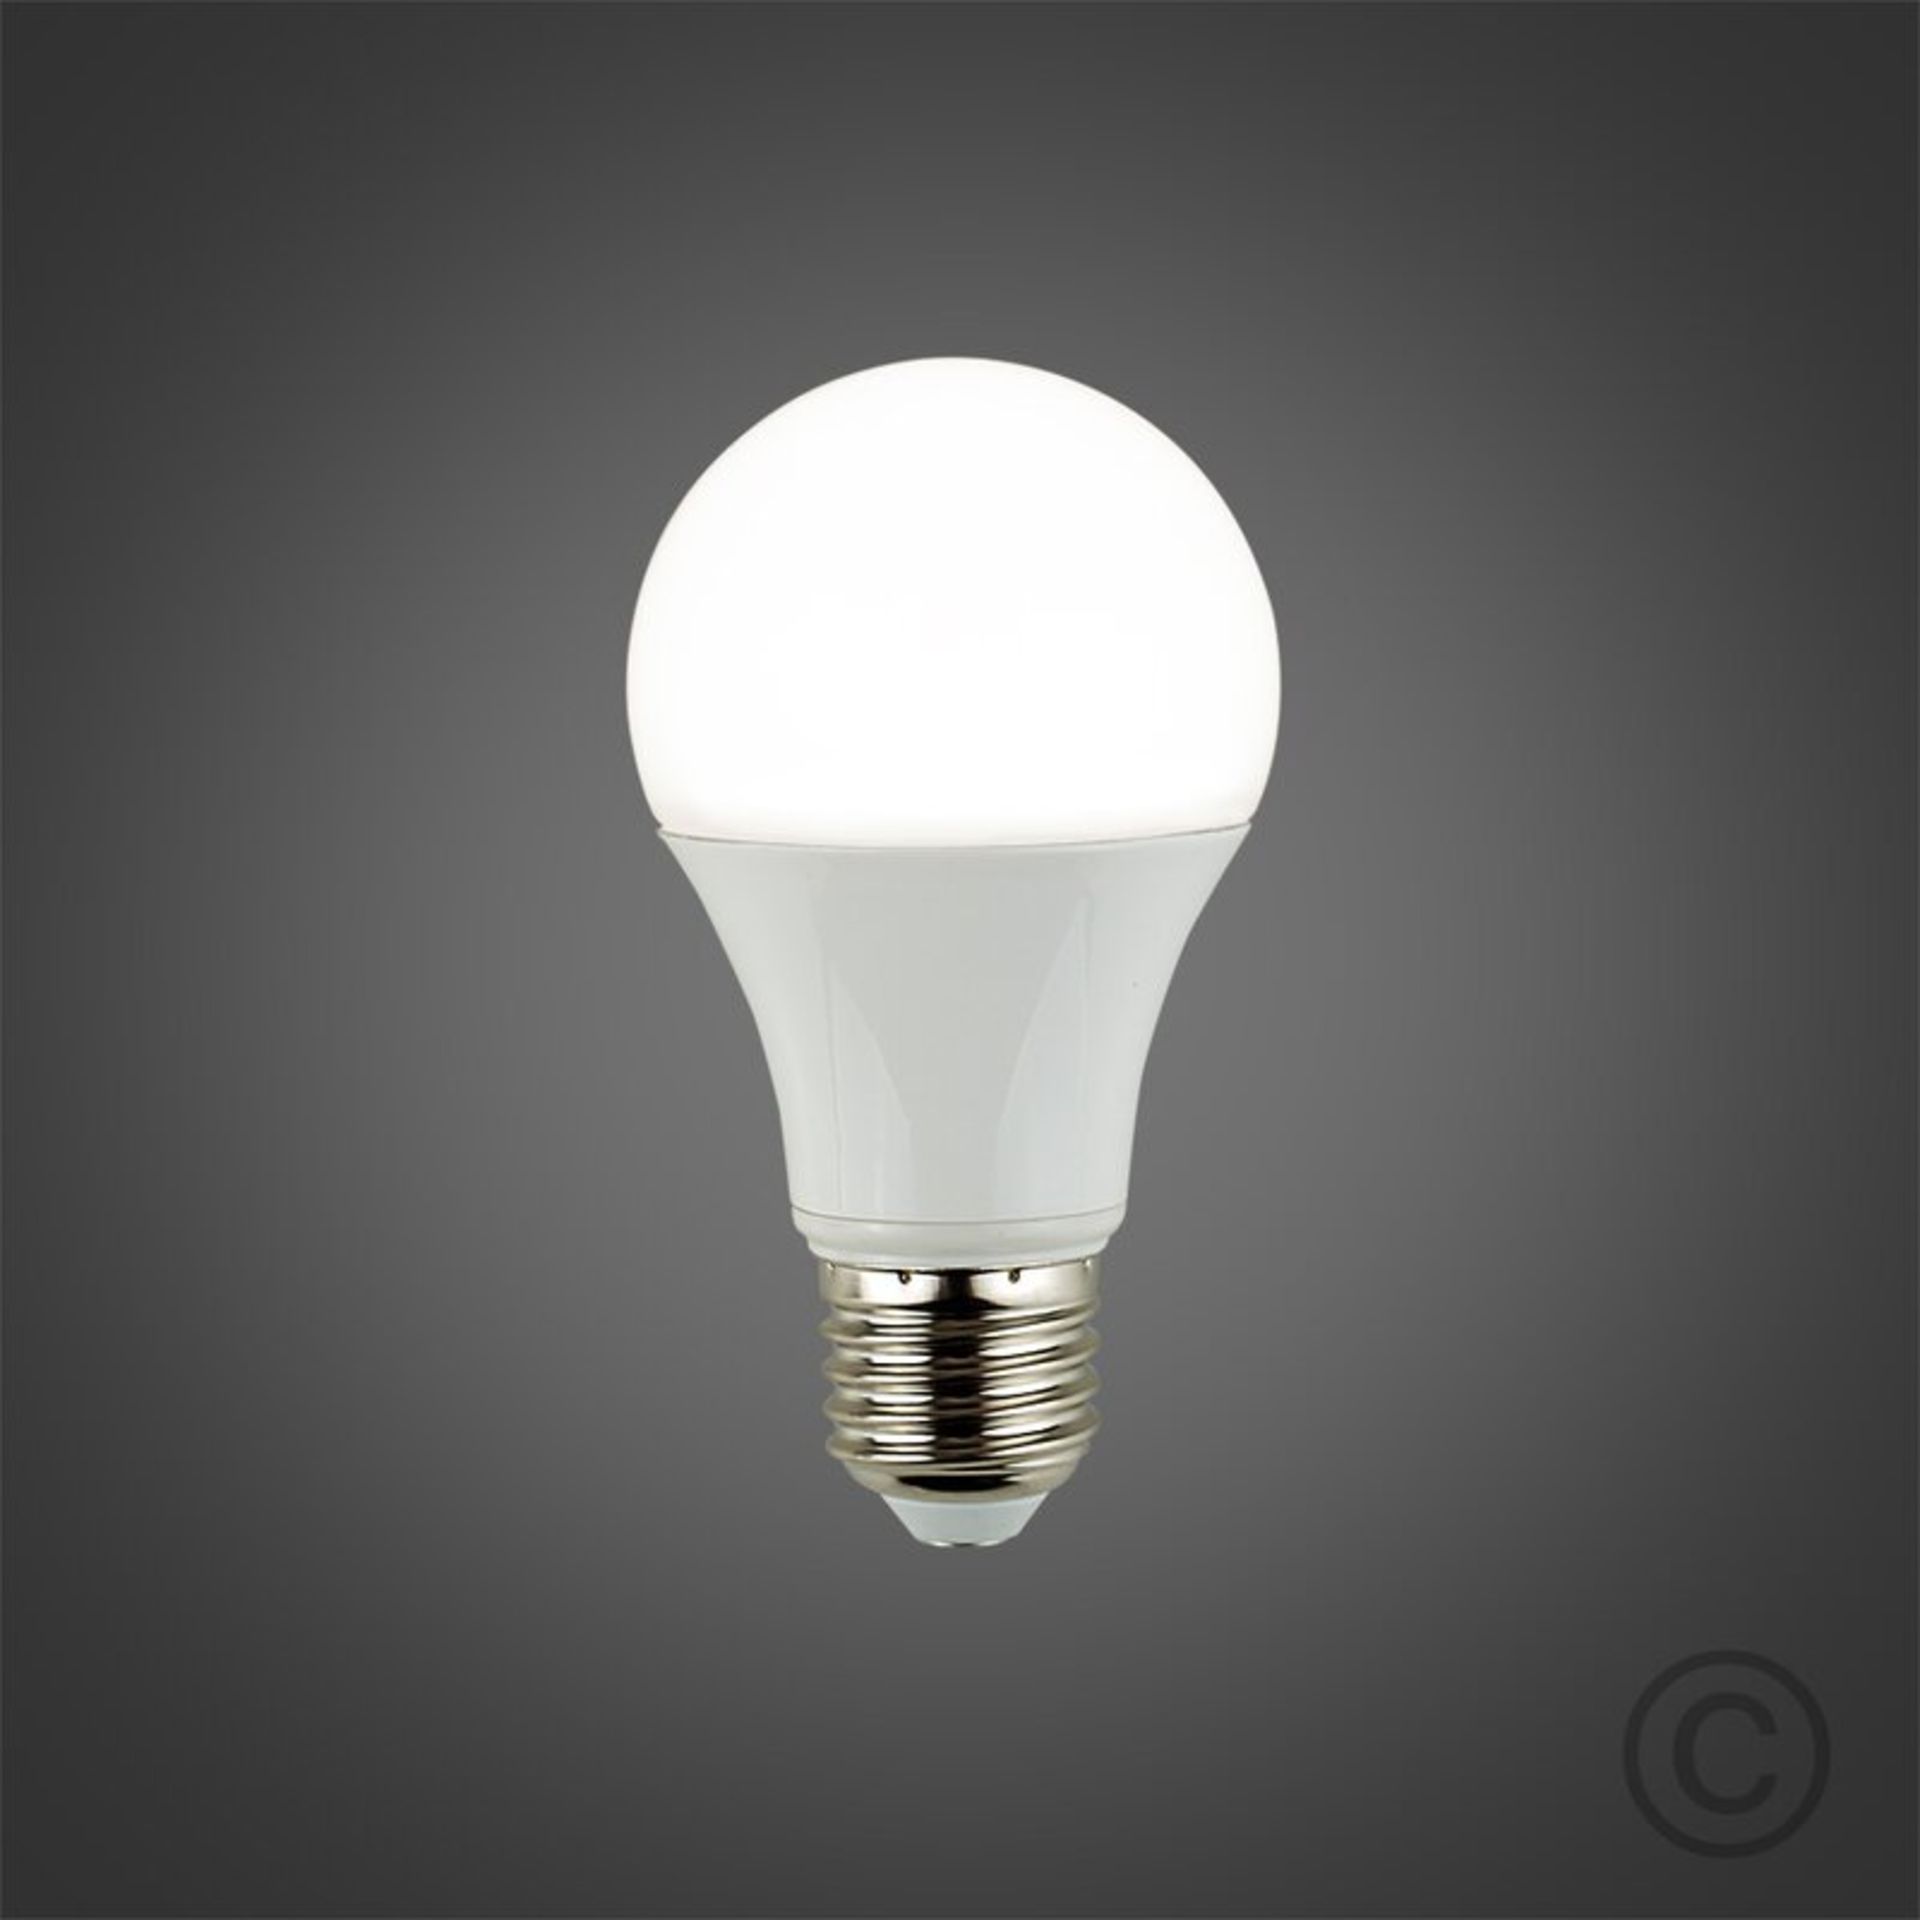 X5 E27 LED Light Bulb - RRP £8.55